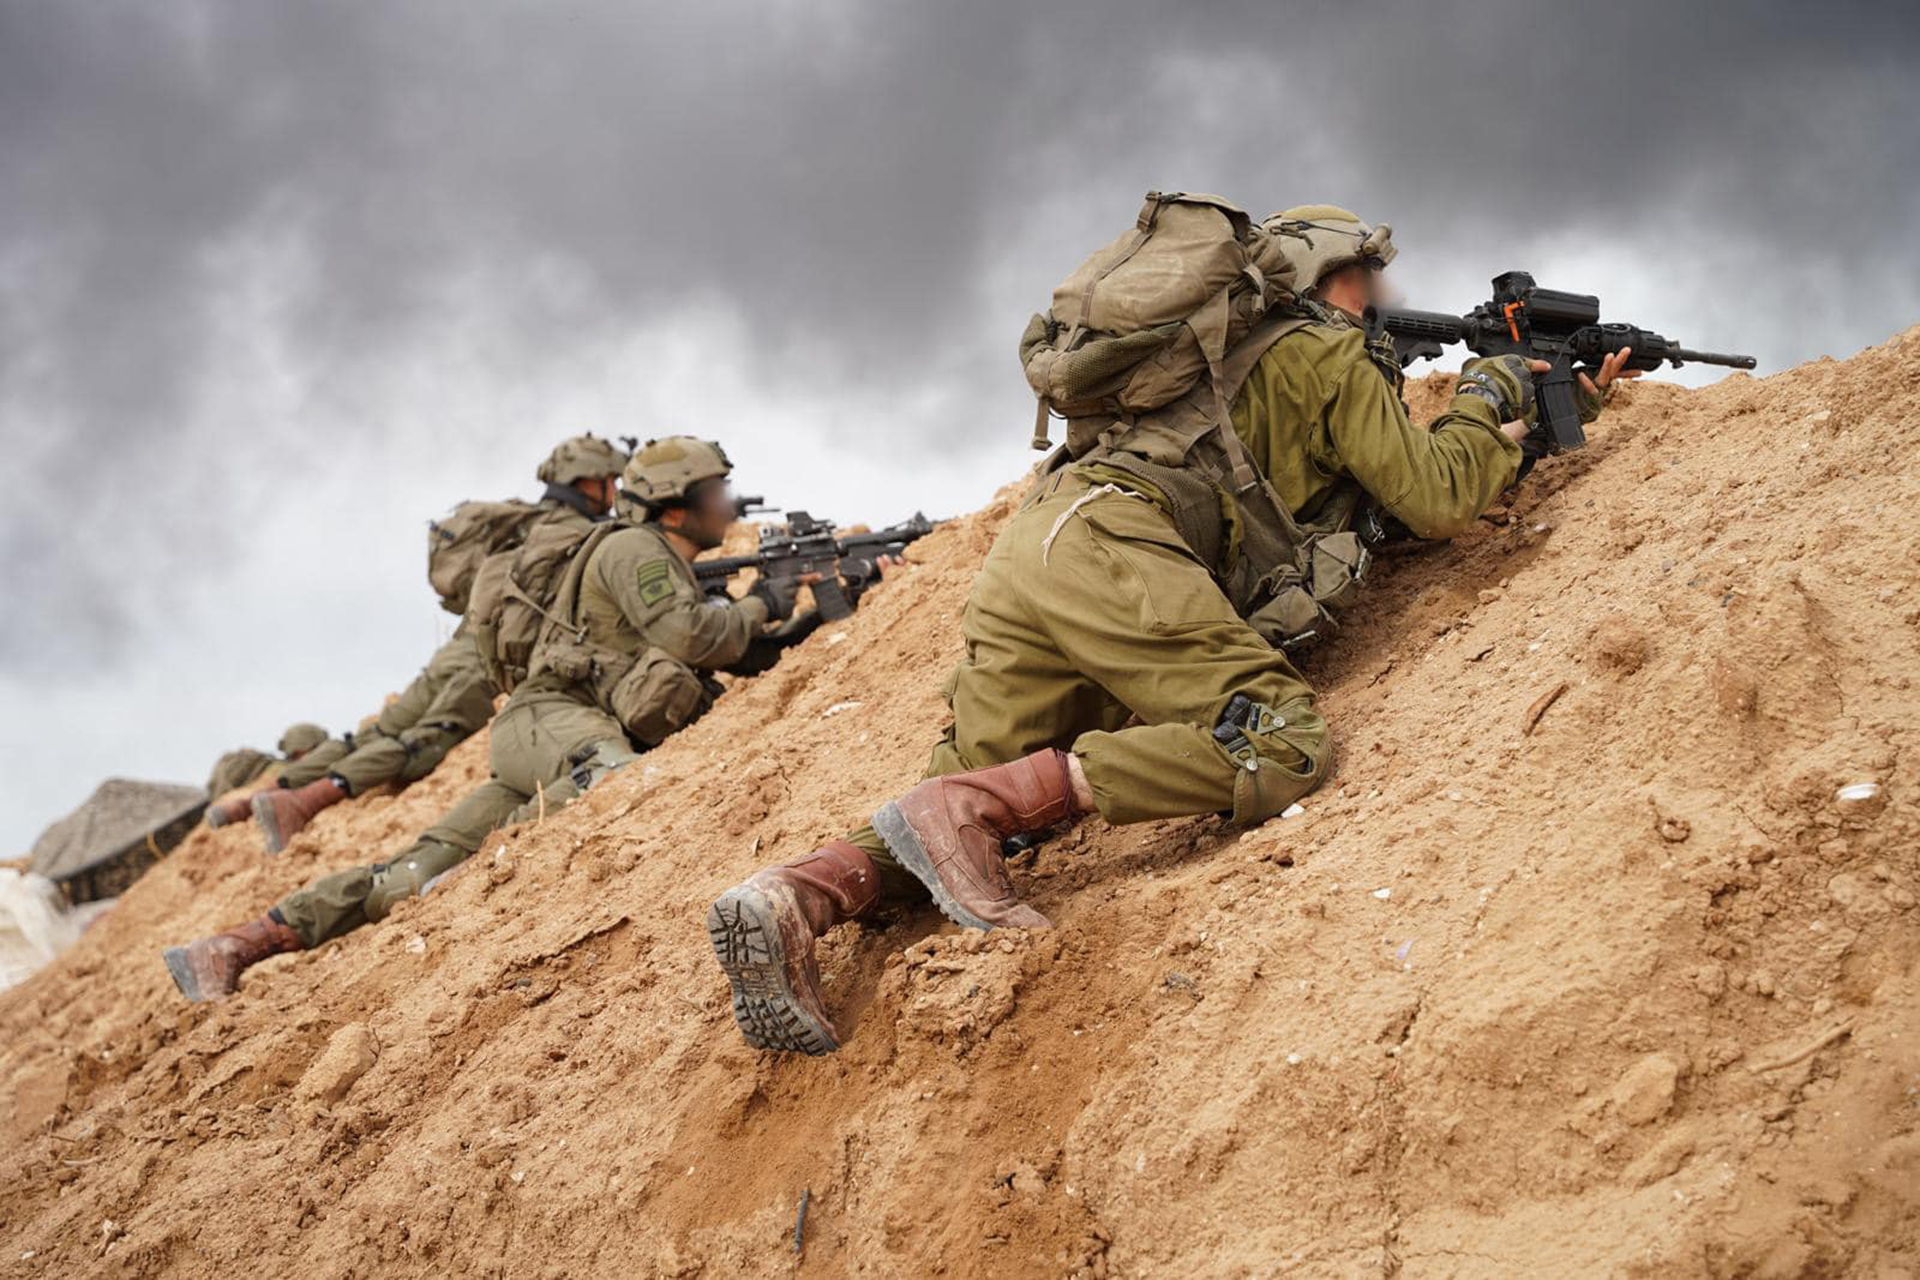 عدوى تجتاح أقدام الجنود الإسرائيليين في غزة | أخبار – البوكس نيوز